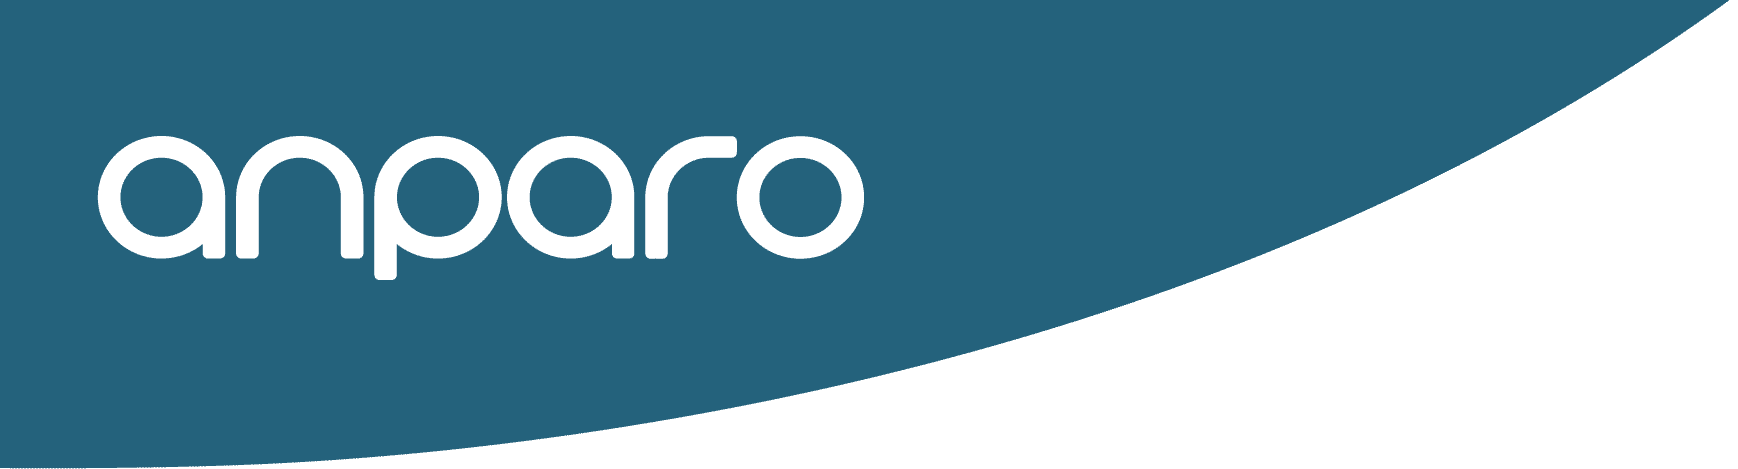 anparo-web-logo